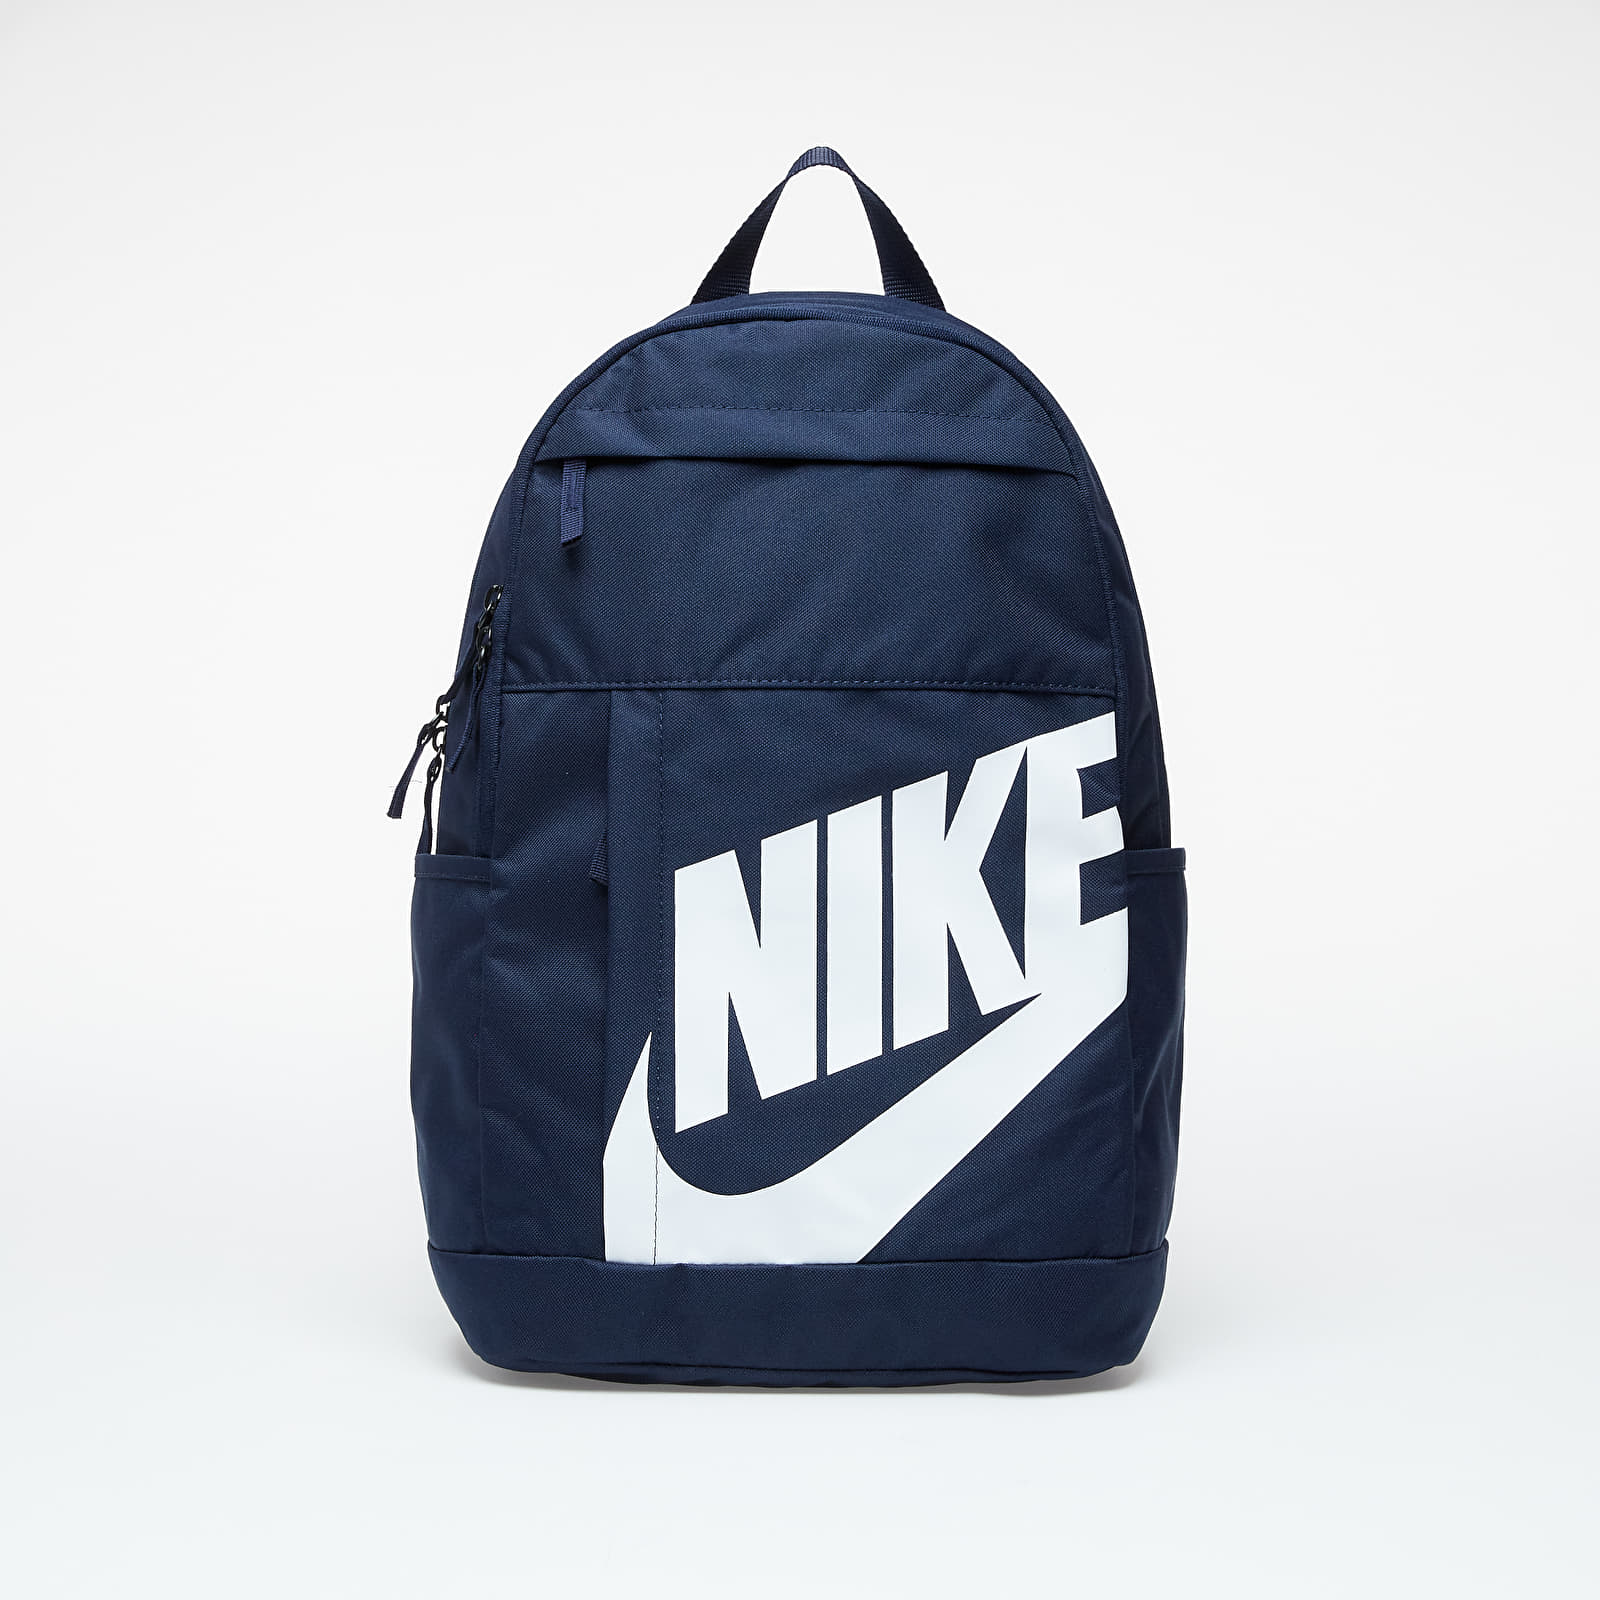 Rucsacuri Nike Elemental Backpack Obsidian/ Obsidian/ White